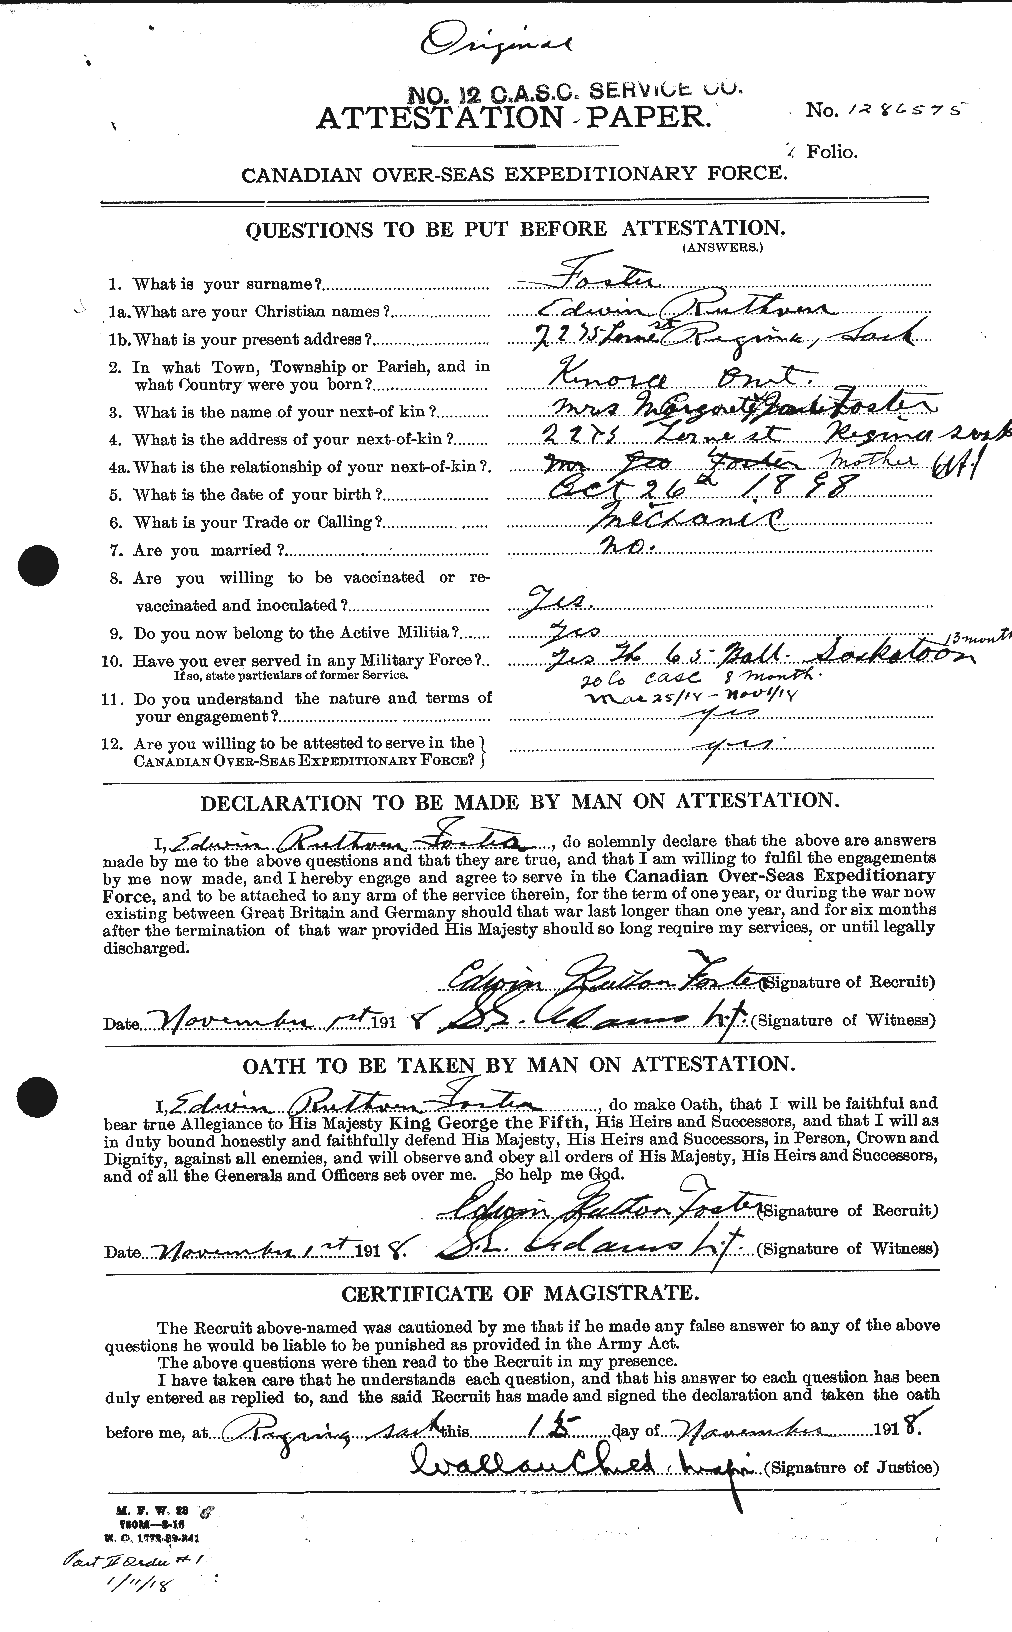 Dossiers du Personnel de la Première Guerre mondiale - CEC 330593a